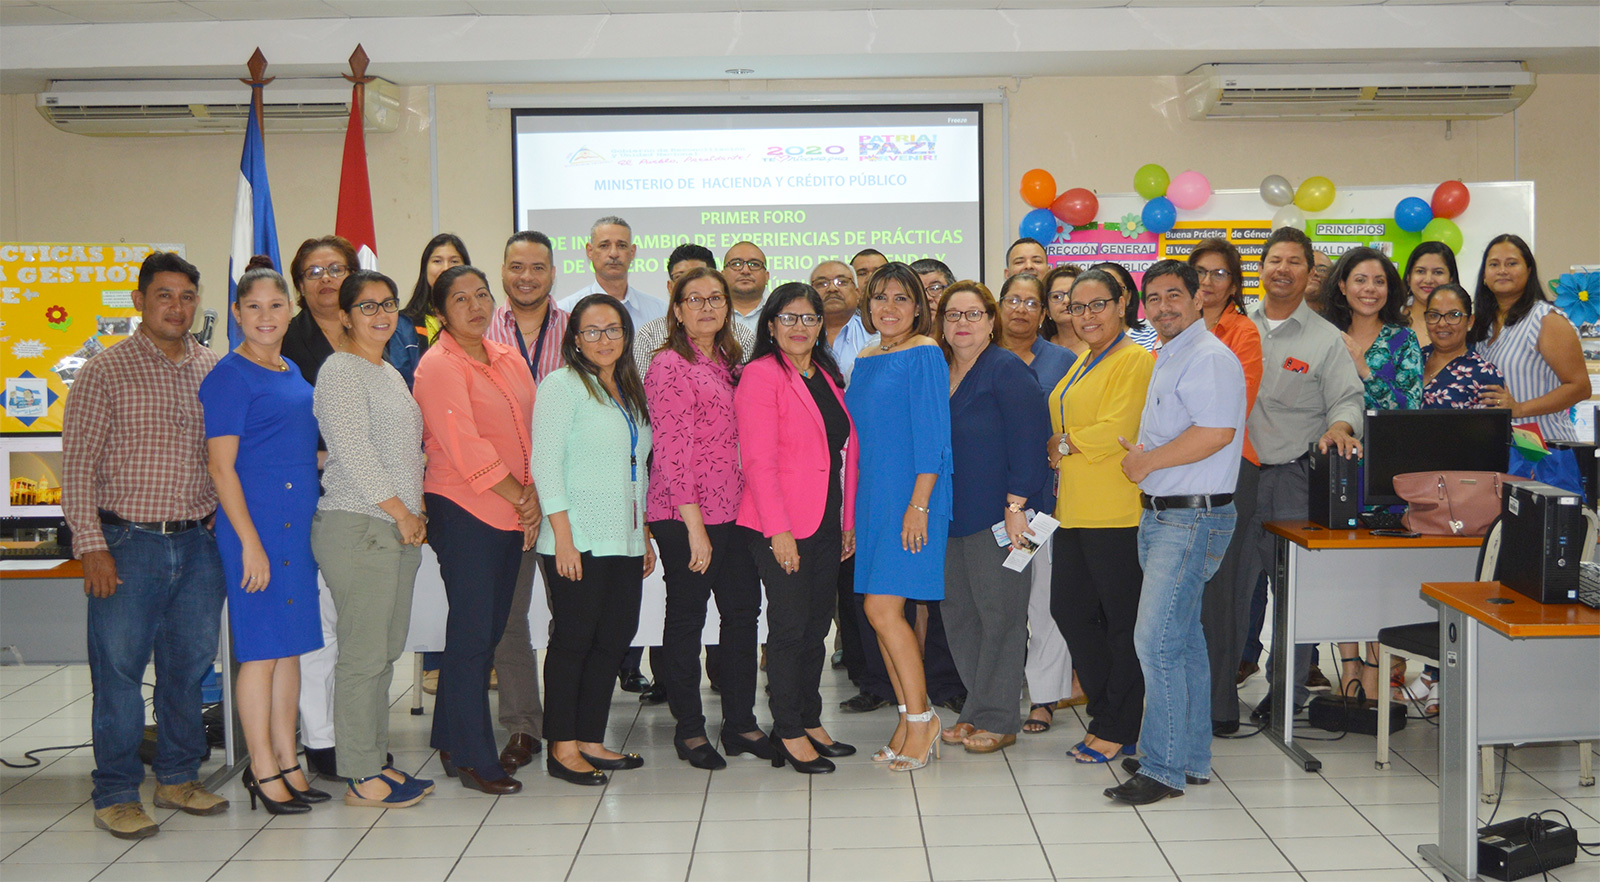 MHCP realiza Foro de Intercambio de Experiencias de Prácticas de Género